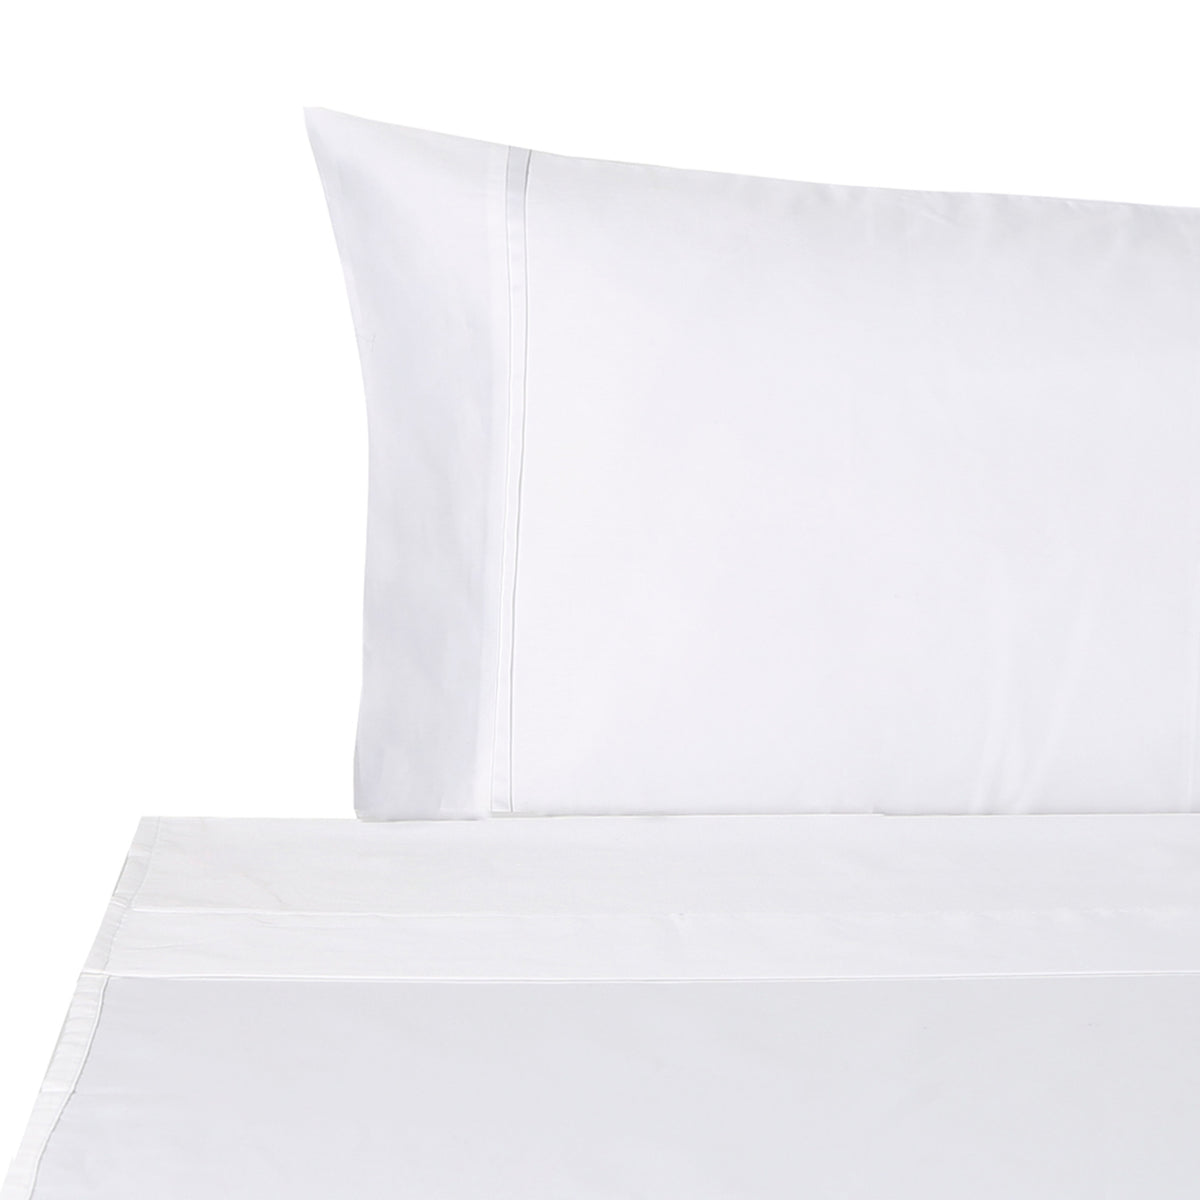 BOVI Estate Bedding Pillowcase and Flat Sheet White/White Fine Linens